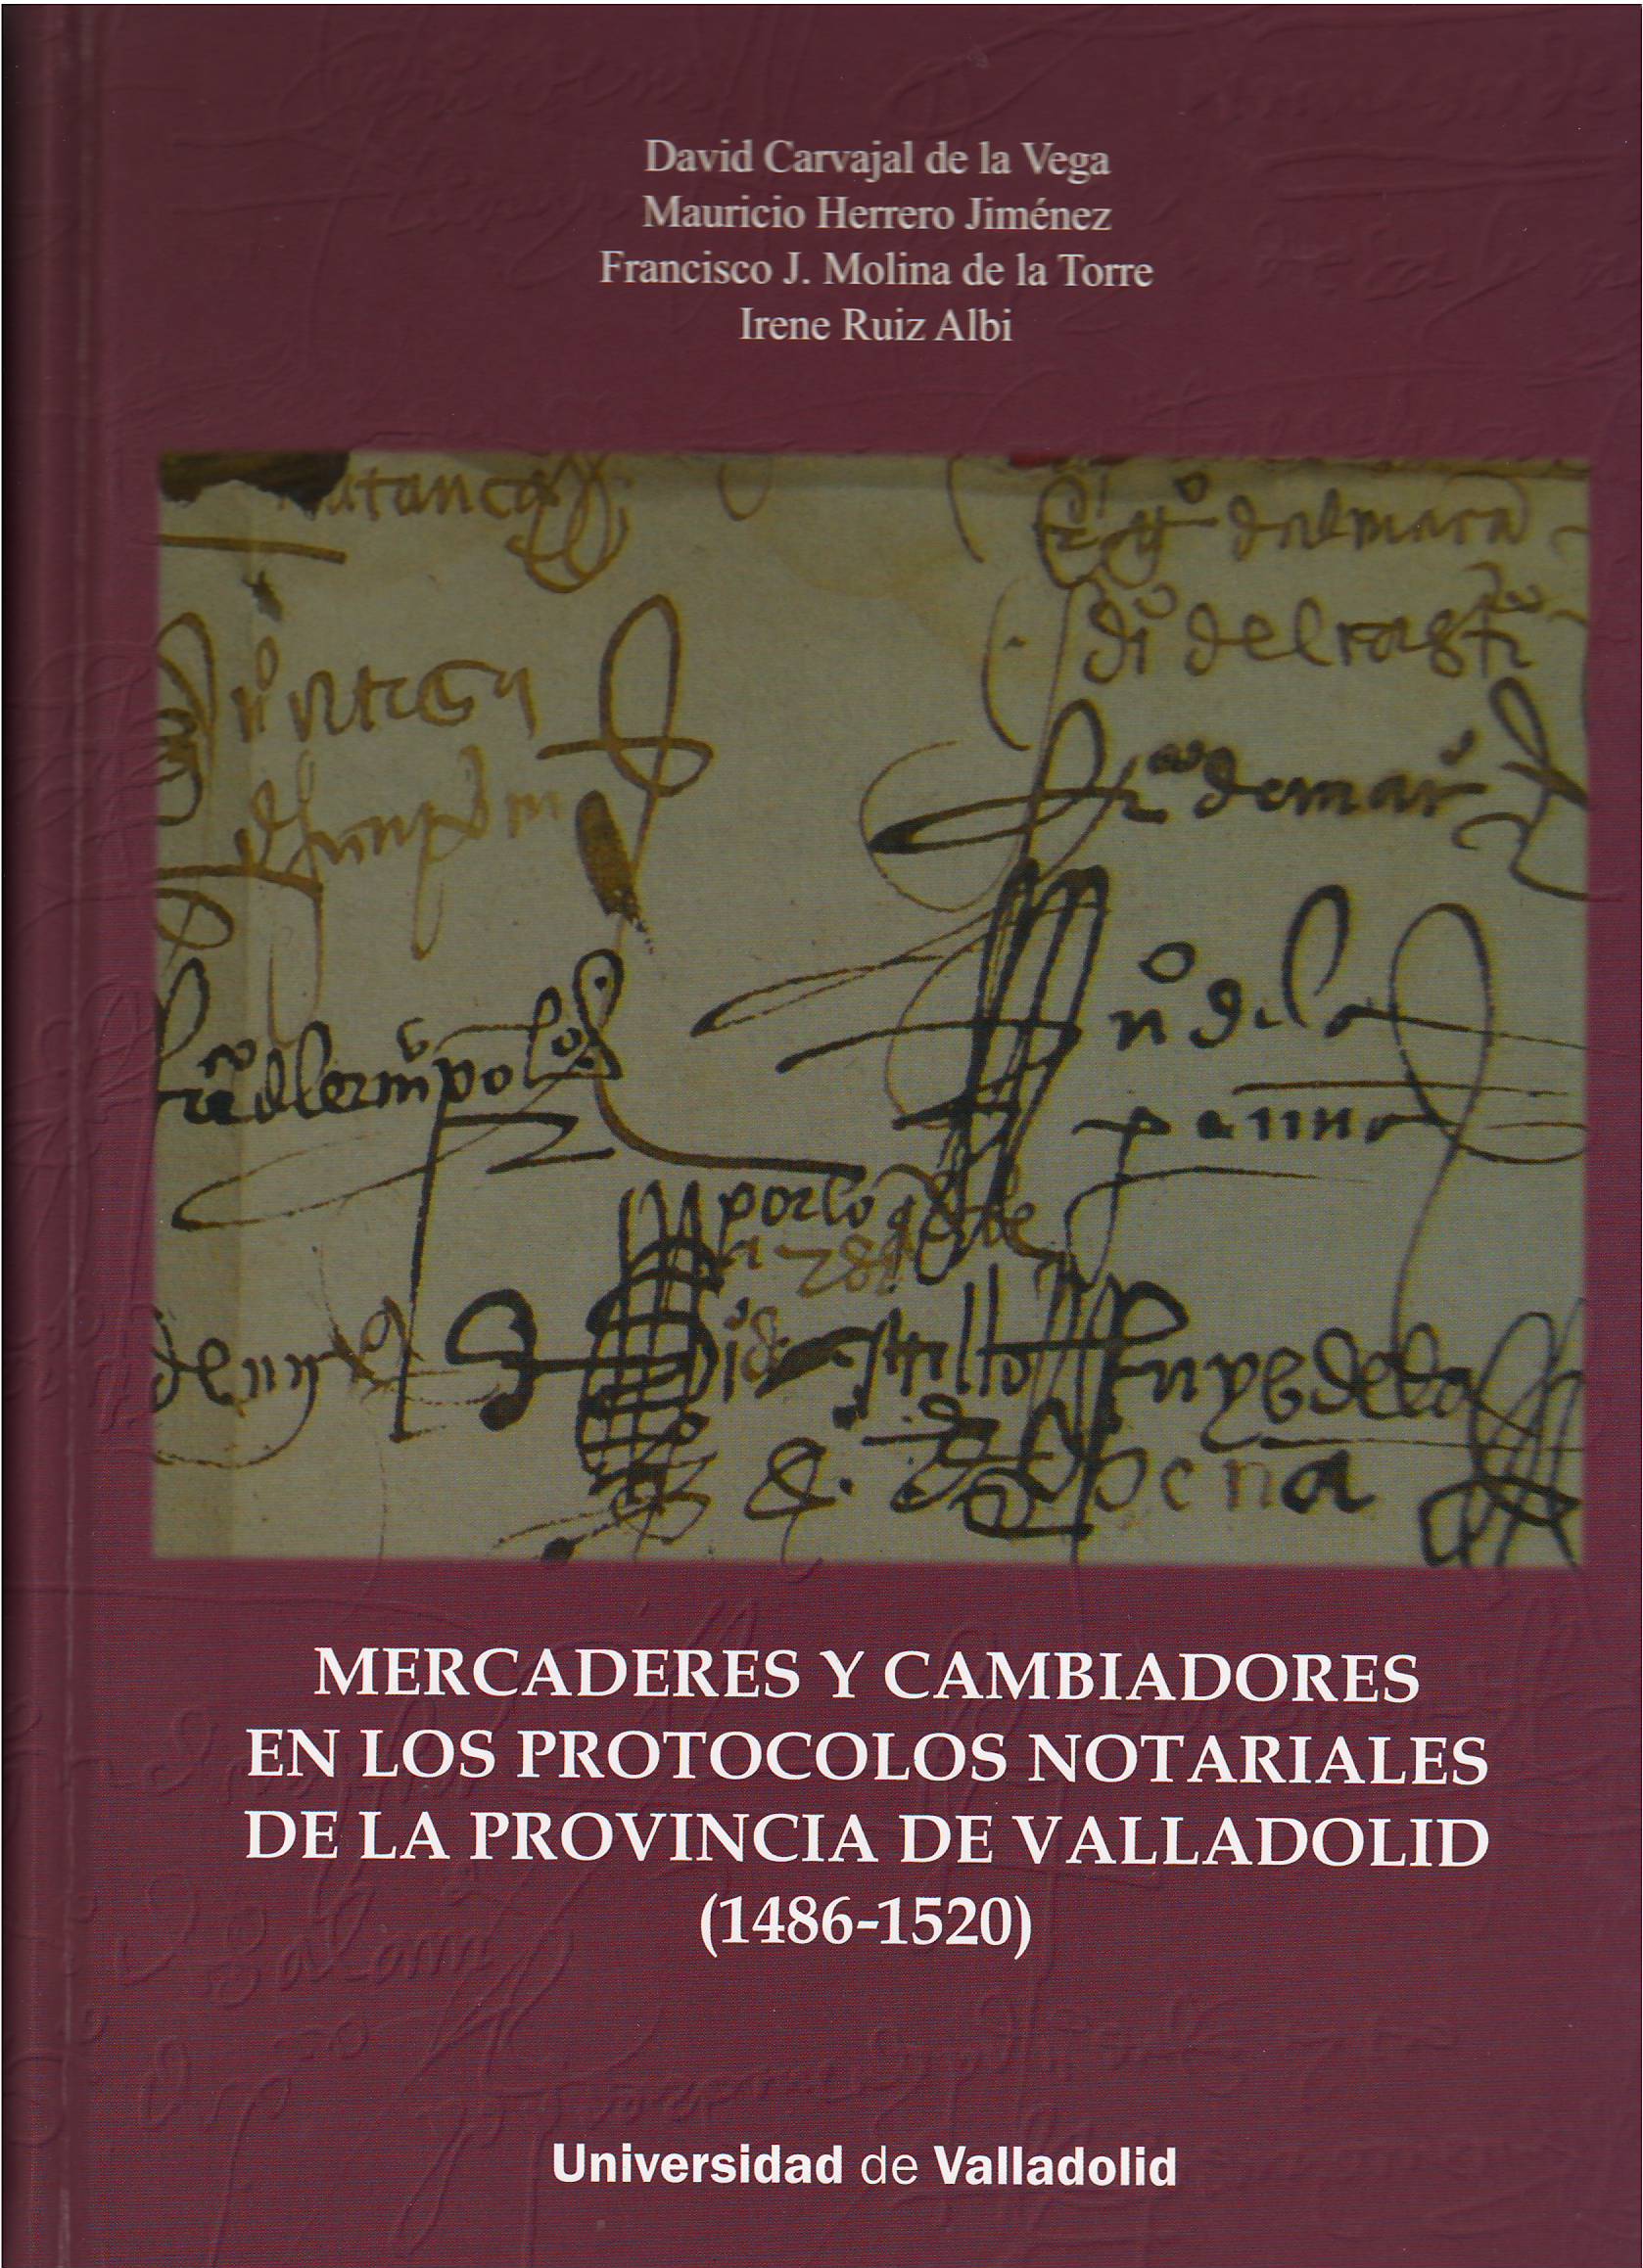 Imagen de portada del libro Mercaderes y cambiadores en los protocolos notariales de la provincia de Valladolid (1486-1520)